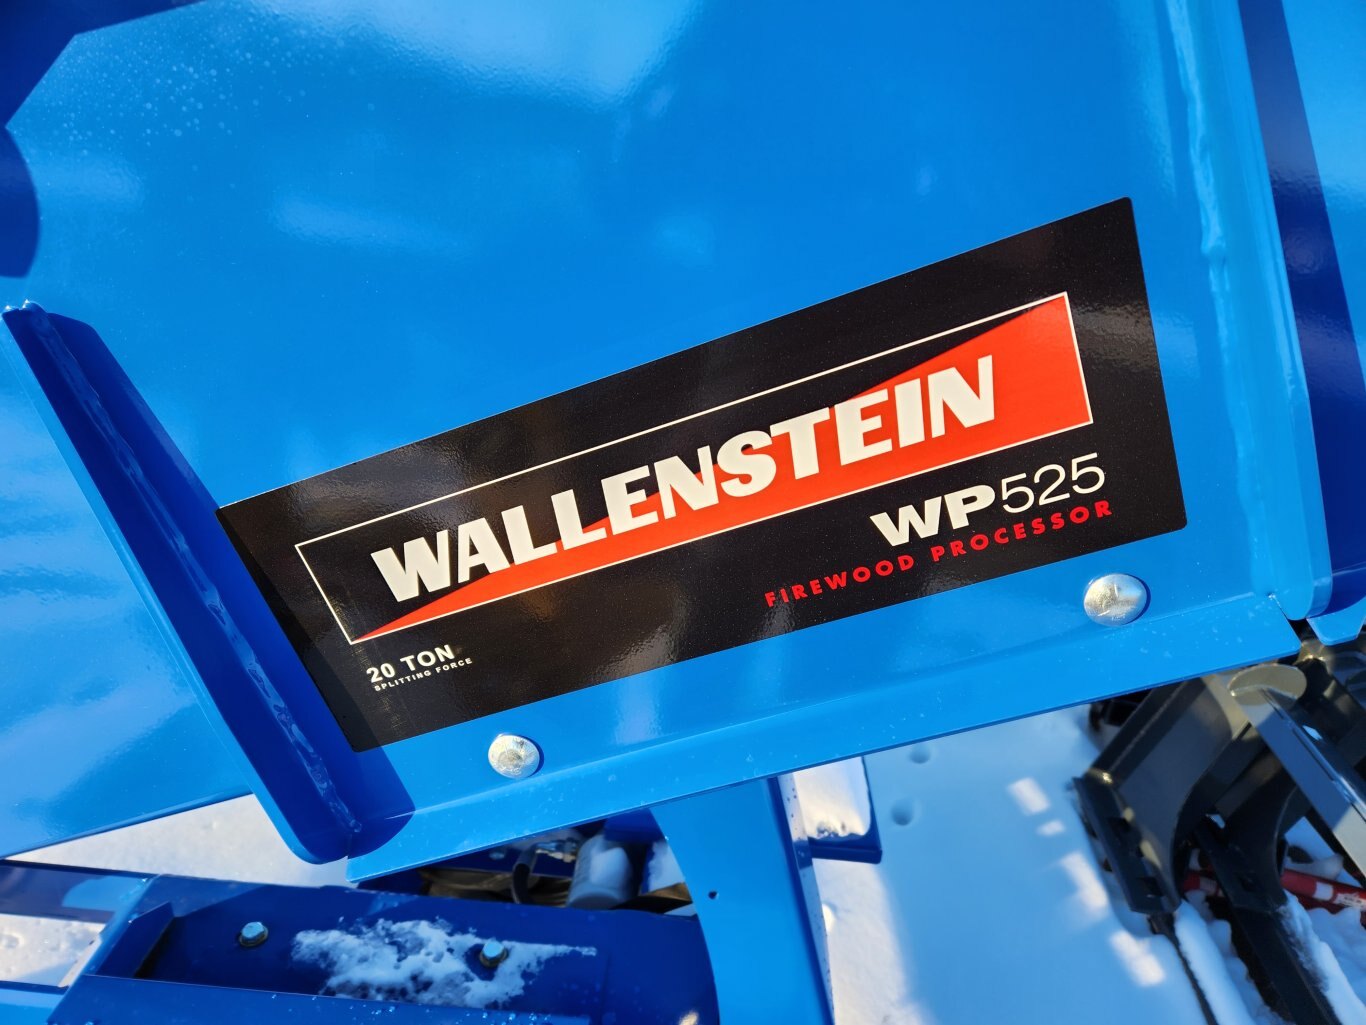 NEW Wallenstein WP525 firewood processor